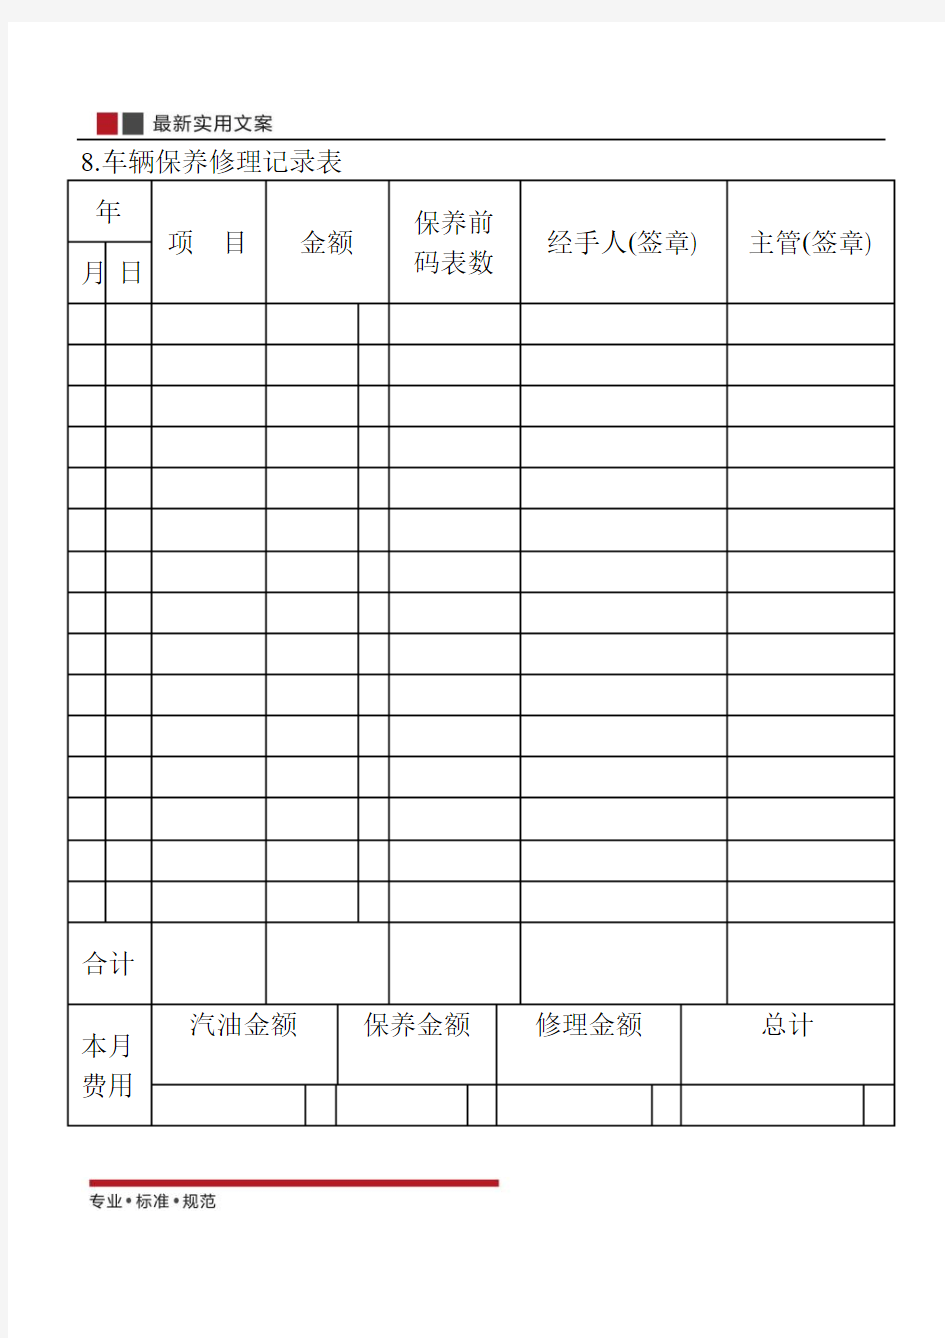 【范本】车辆保养修理记录表(标准模板)